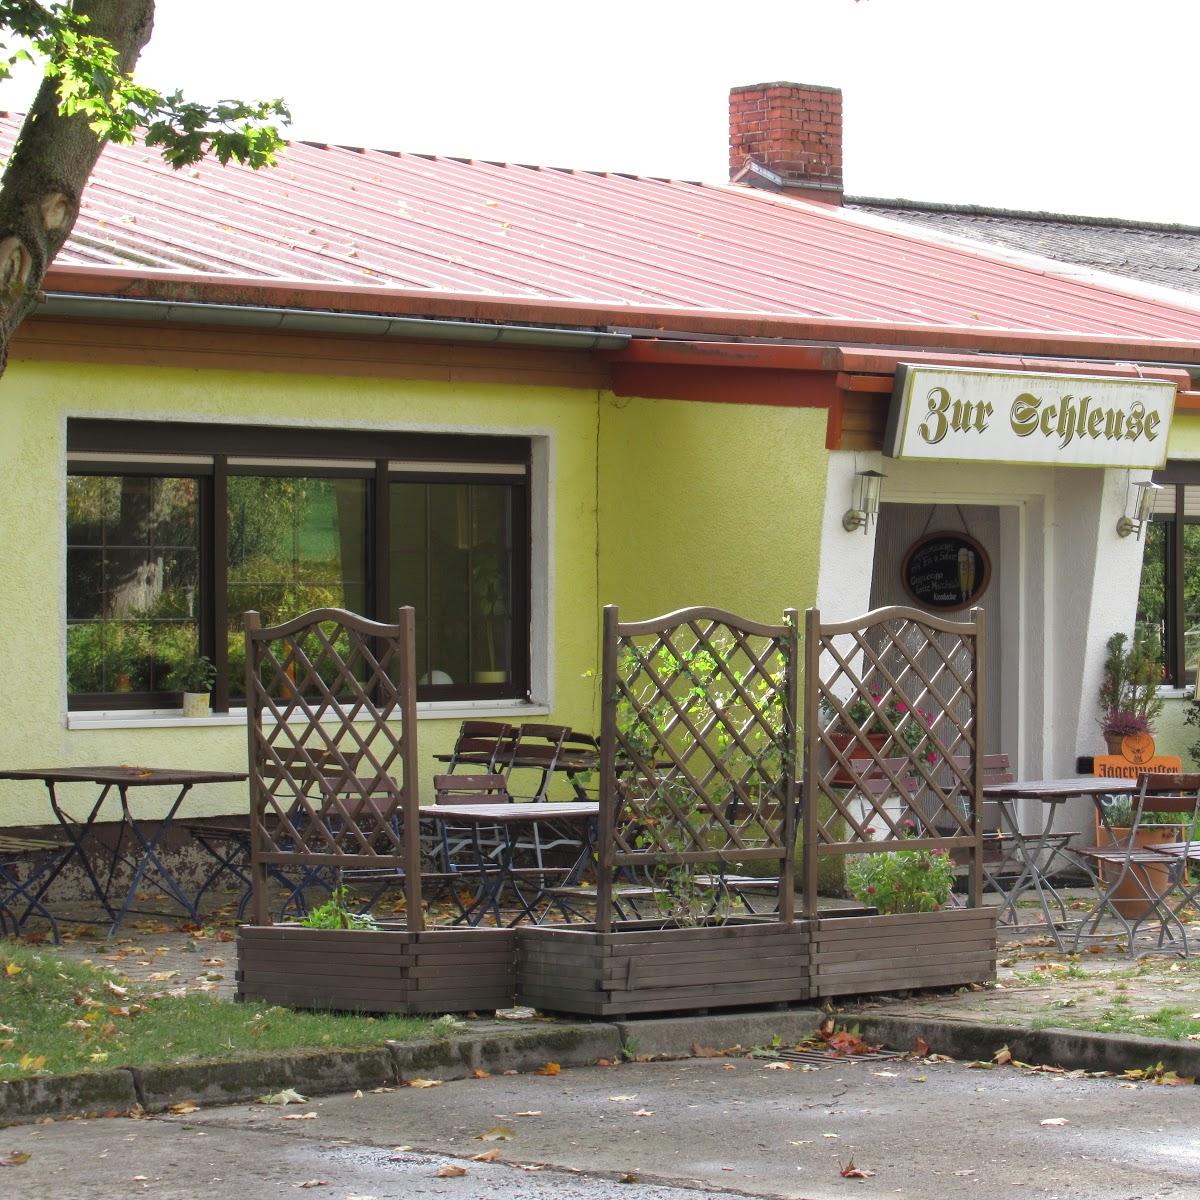 Restaurant "Zur Schleuse" in Lüssow